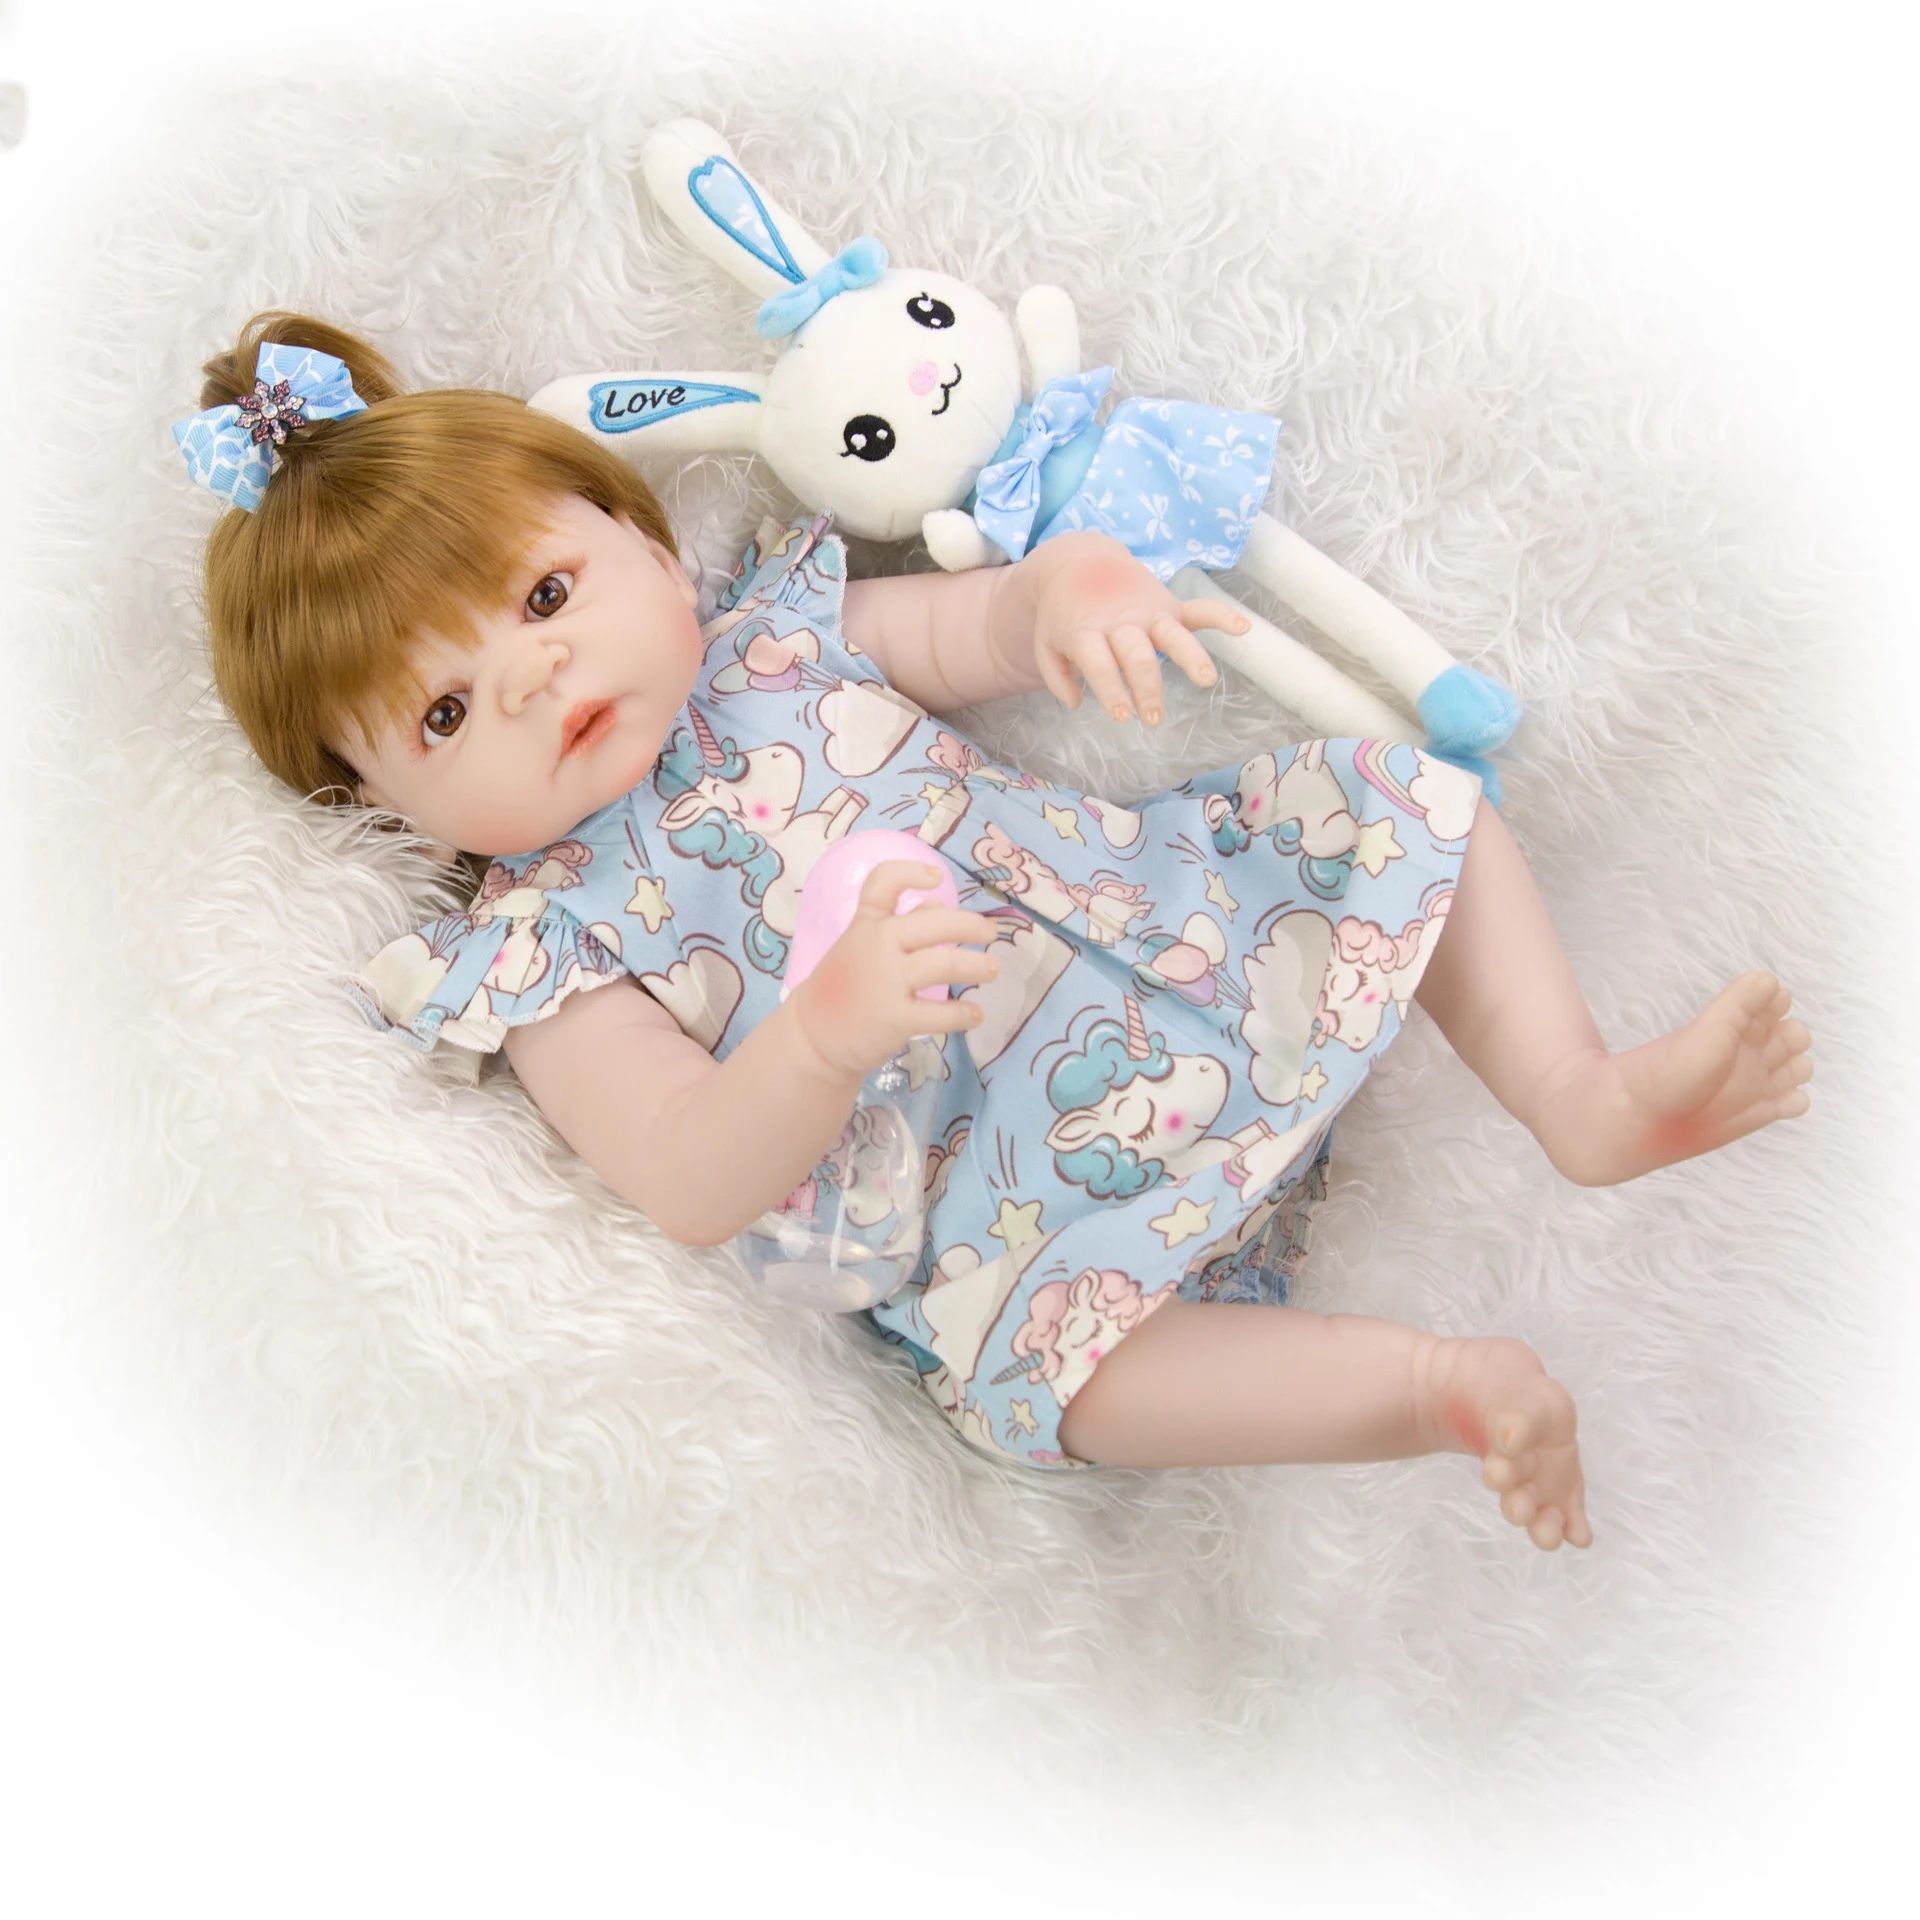 2" 55 см игрушка тело Кукла Reborn Baby Doll девочка кукла игрушка для девочки принцесса детские куклы Дети День рождения Рождество подарки игрушка для ребенка